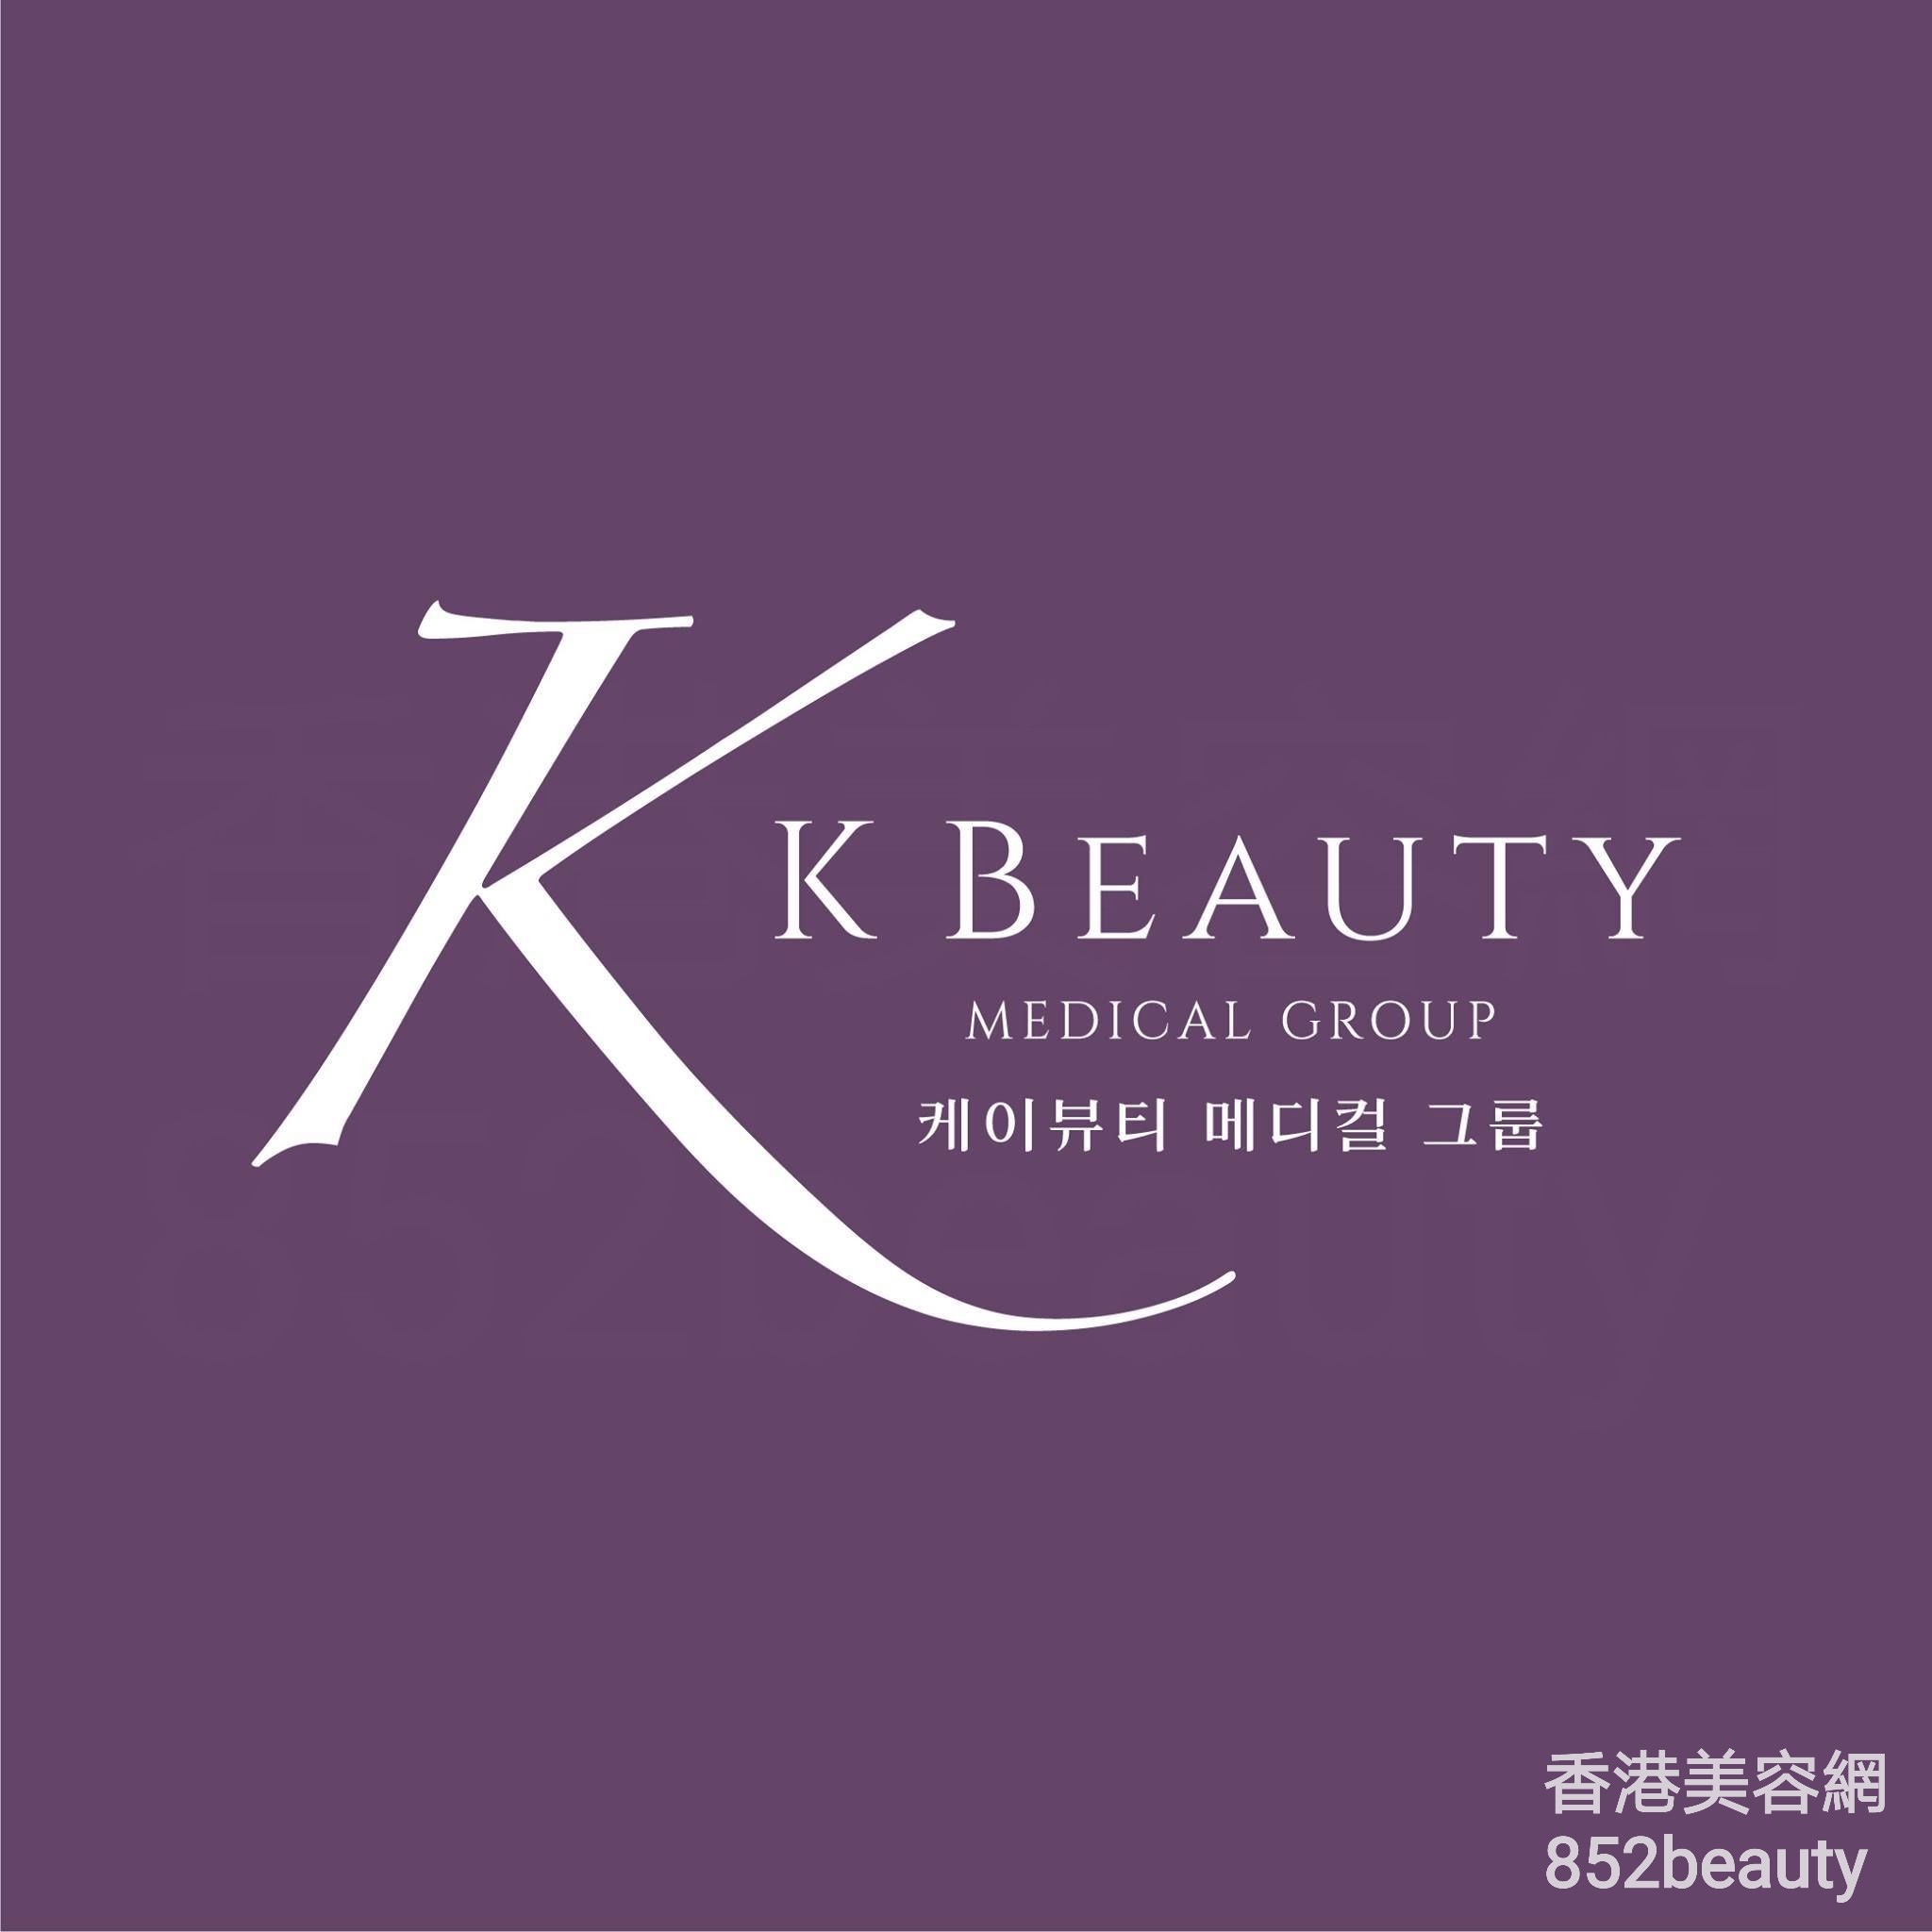 美容院: K Beauty Medical Group